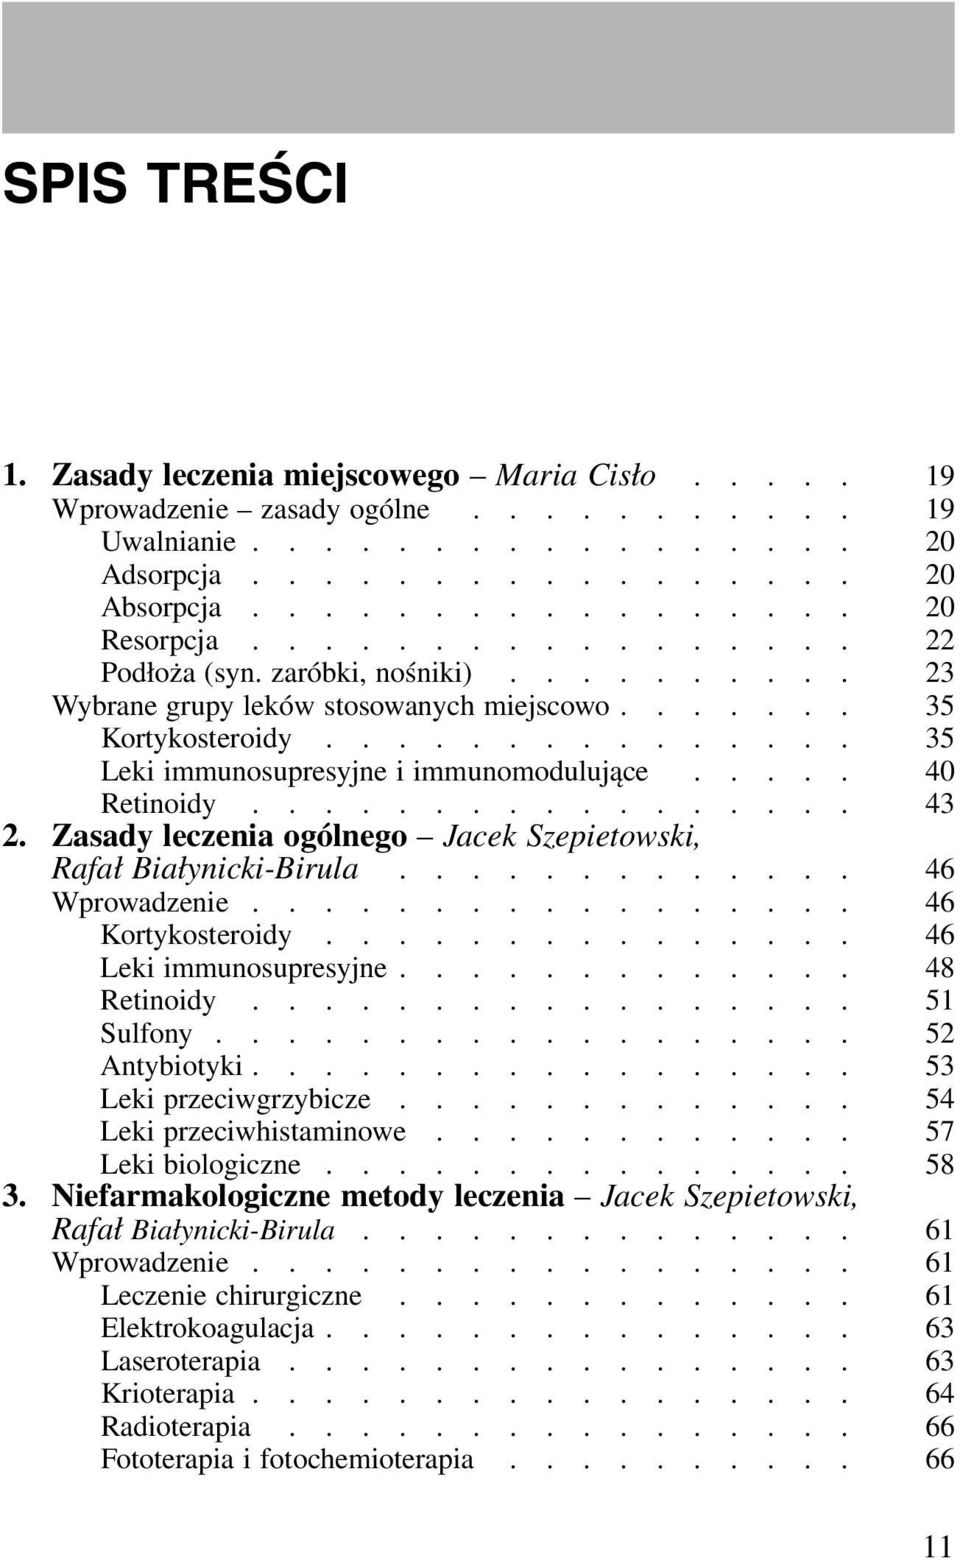 .... 40 Retinoidy................. 43 2. Zasady leczenia ogólnego Jacek Szepietowski, Rafał Białynicki-Birula............. 46 Wprowadzenie................. 46 Kortykosteroidy.